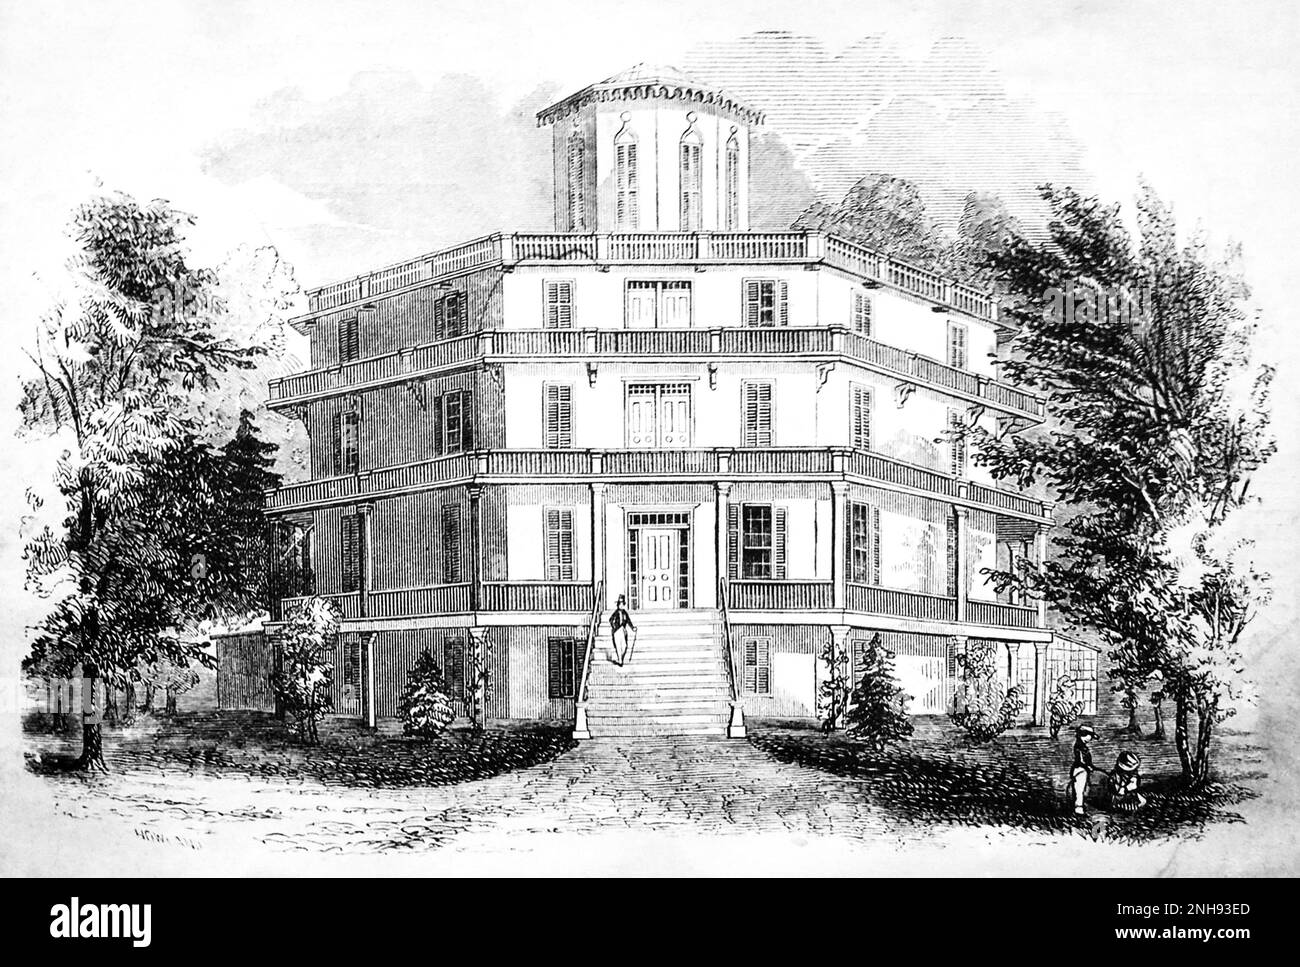 Lithographie der Fowler Octagonal Mansion in Fishkill, New York, 1854. Orson Squire Fowler (180-1887) machte das achteckige Haus Mitte des 19. Jahrhunderts populär. Stockfoto